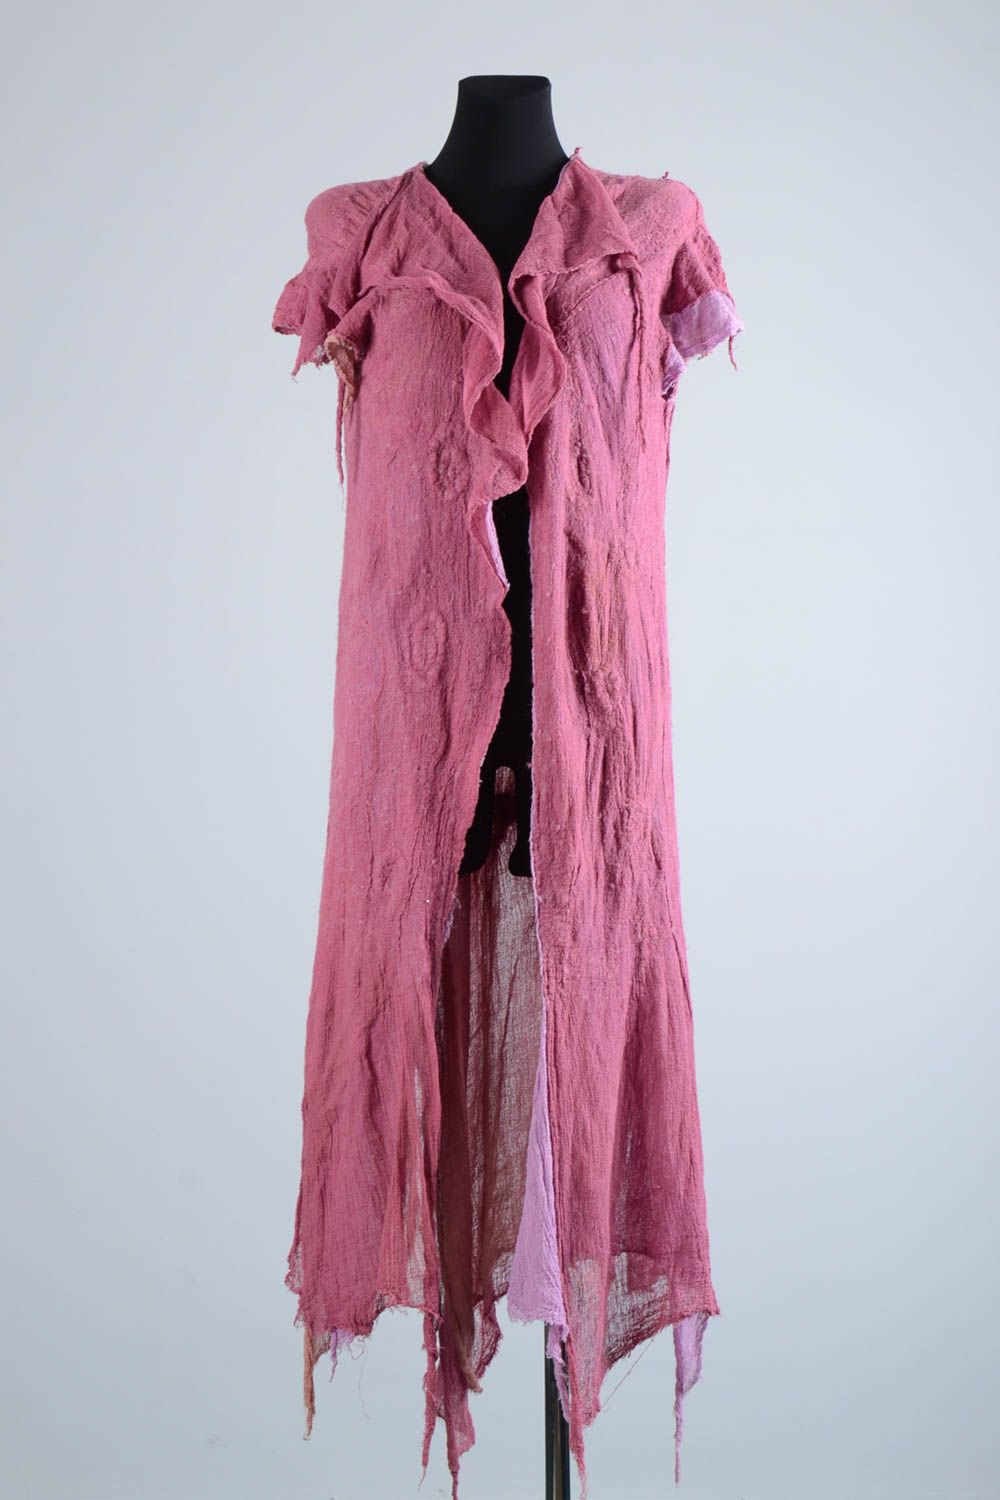 Manteau été femme fait main Manteau laine couleur lilas feutré Vêtement femme photo 1